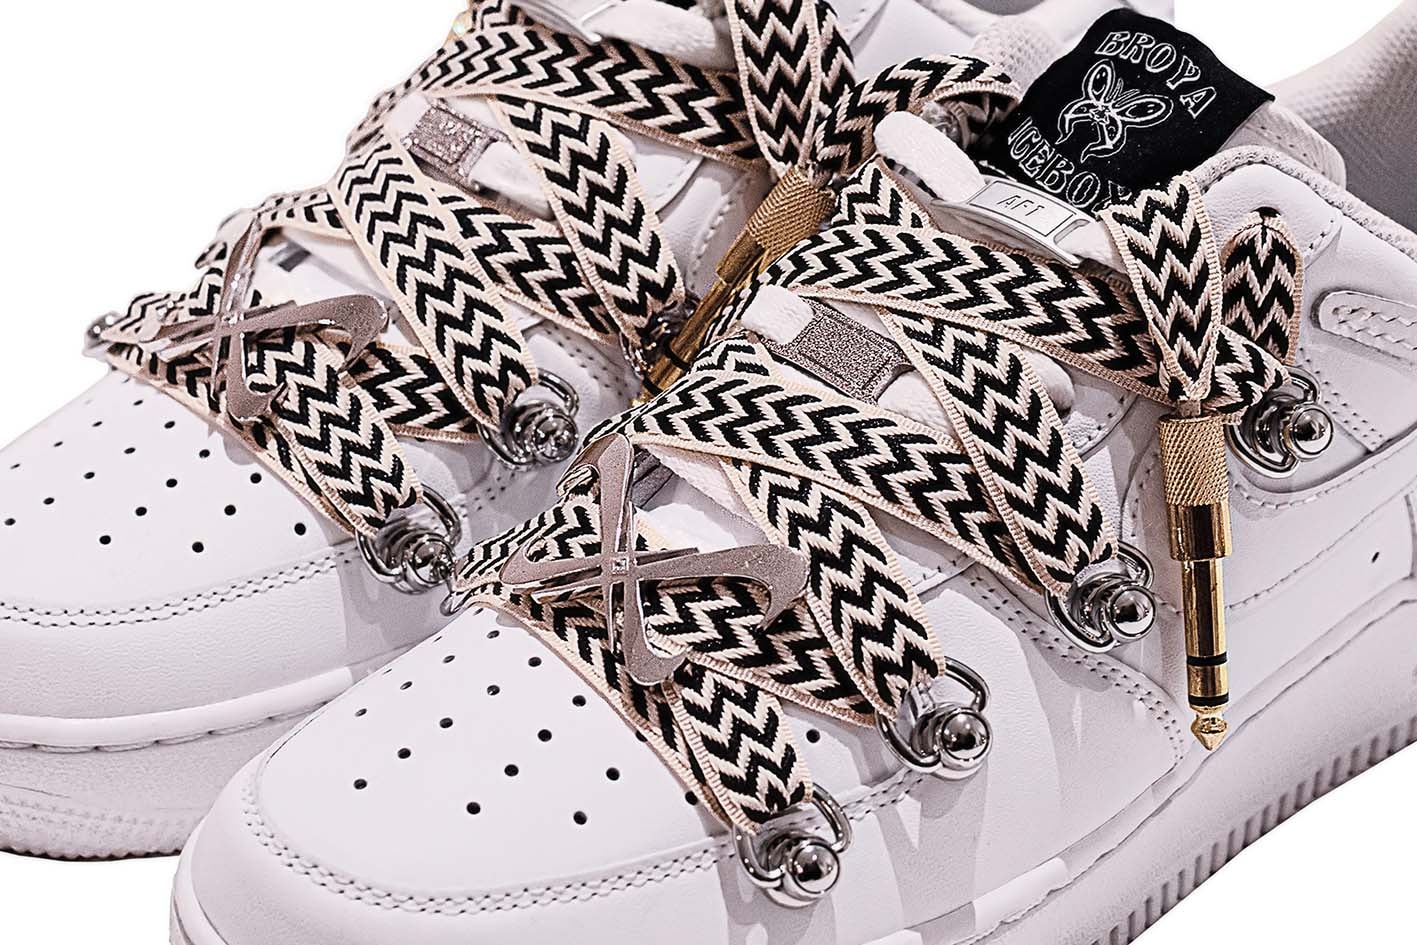 嘻哈廠牌 BROYA ICEBOX 推出 Nike Air Force 1 定製鞋款